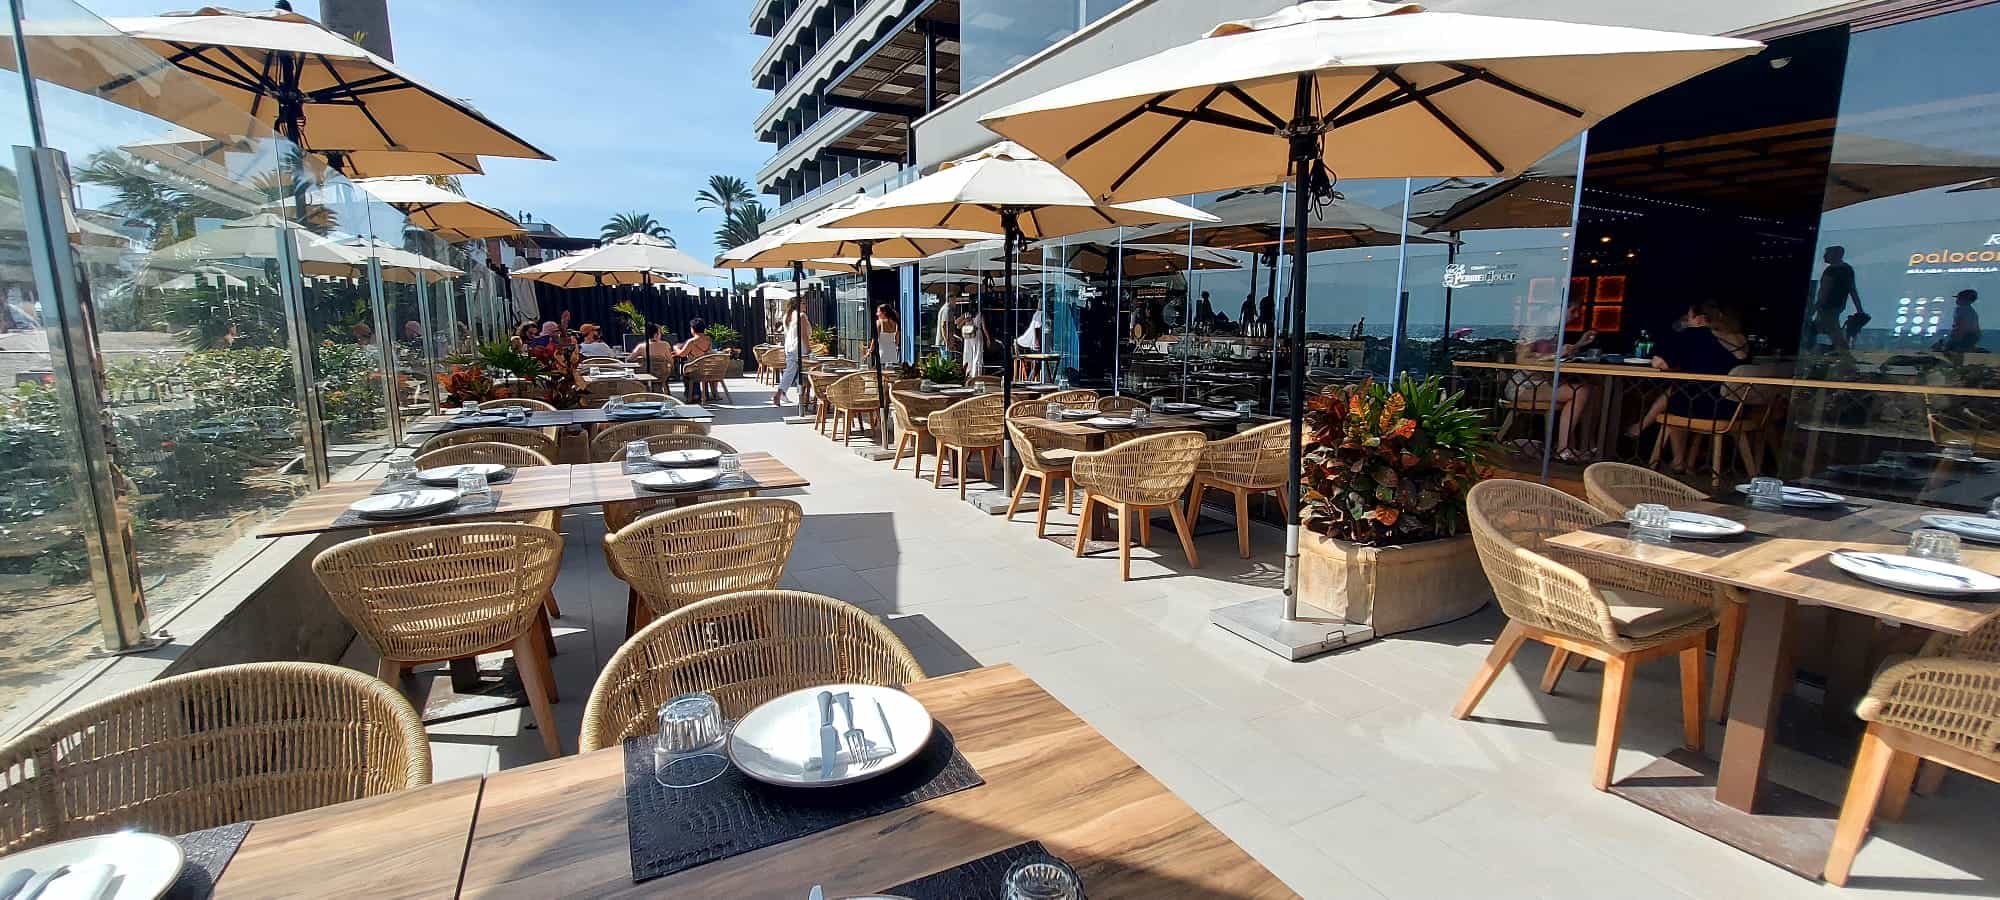 sillas mesas y sombrillas terraza restaurante Palo Cortado suministradas por Sitamon